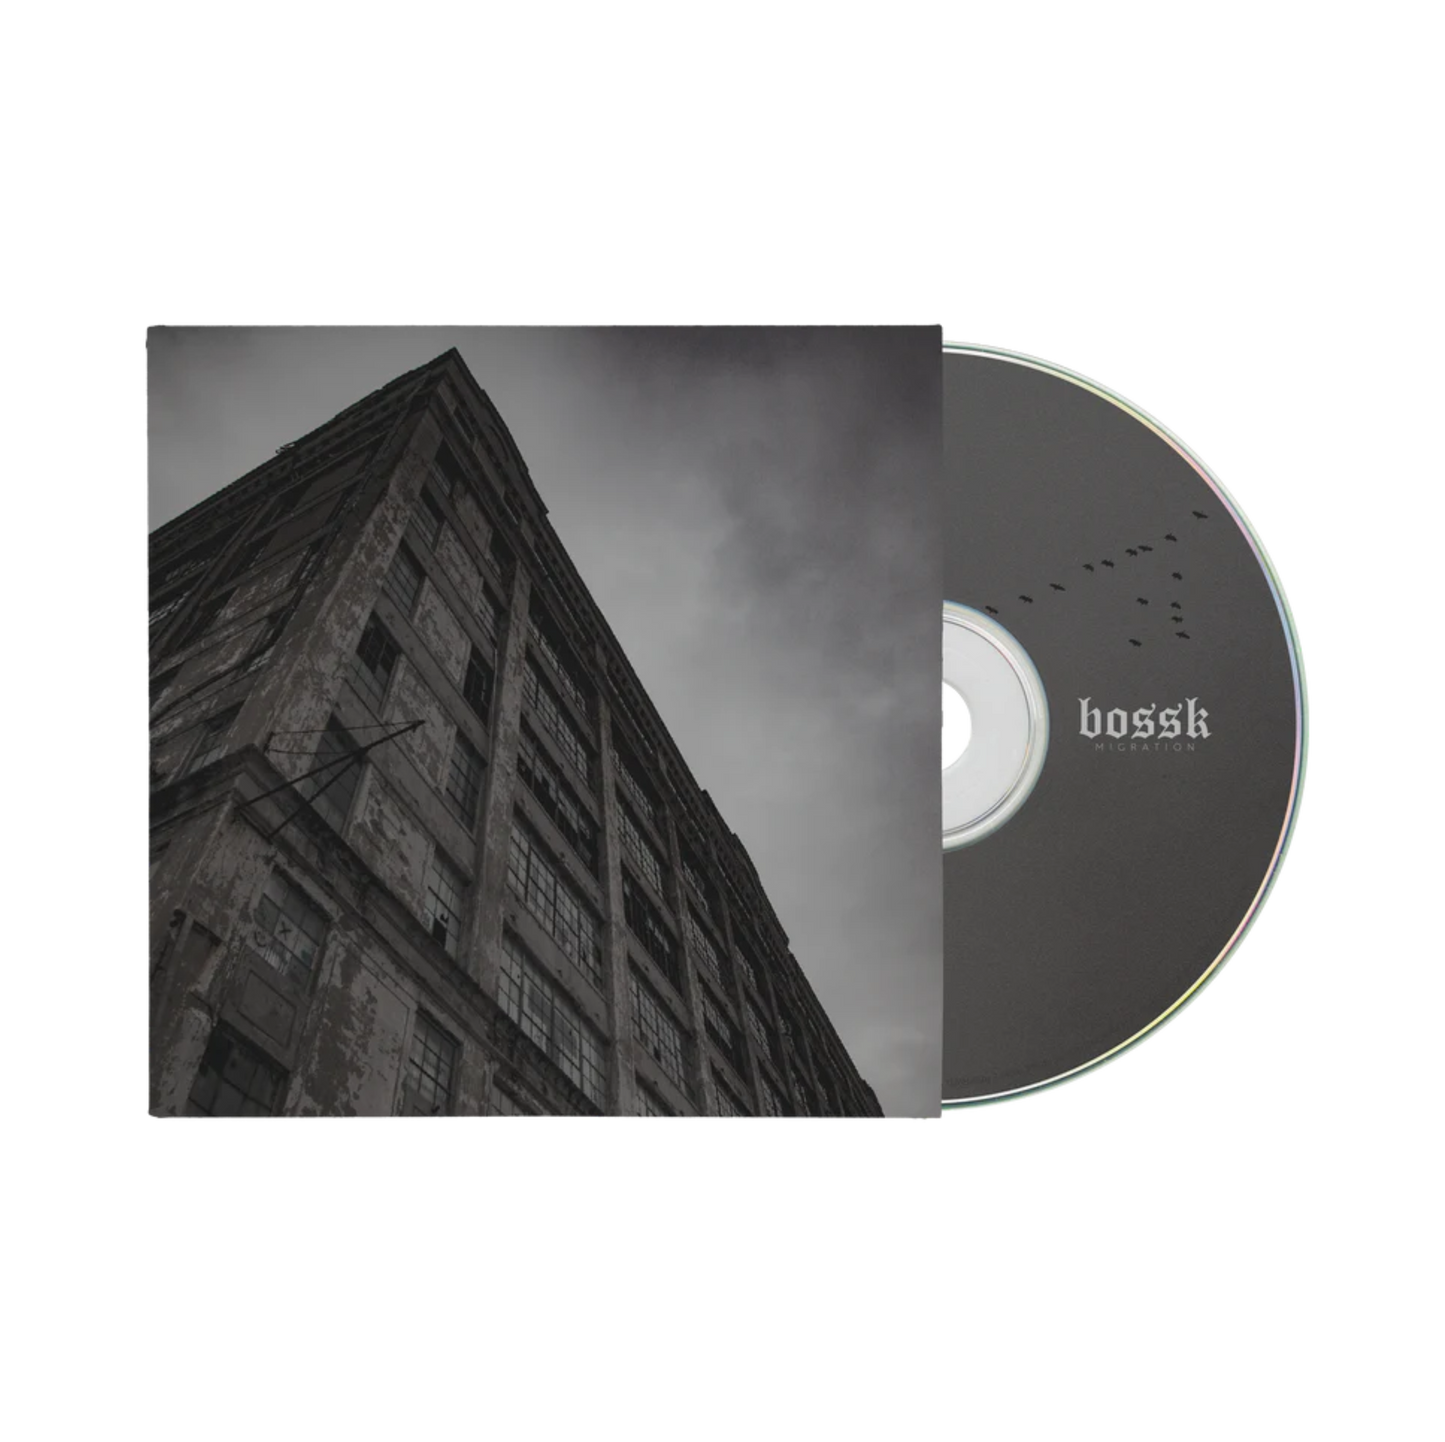 Bossk "Migration" CD